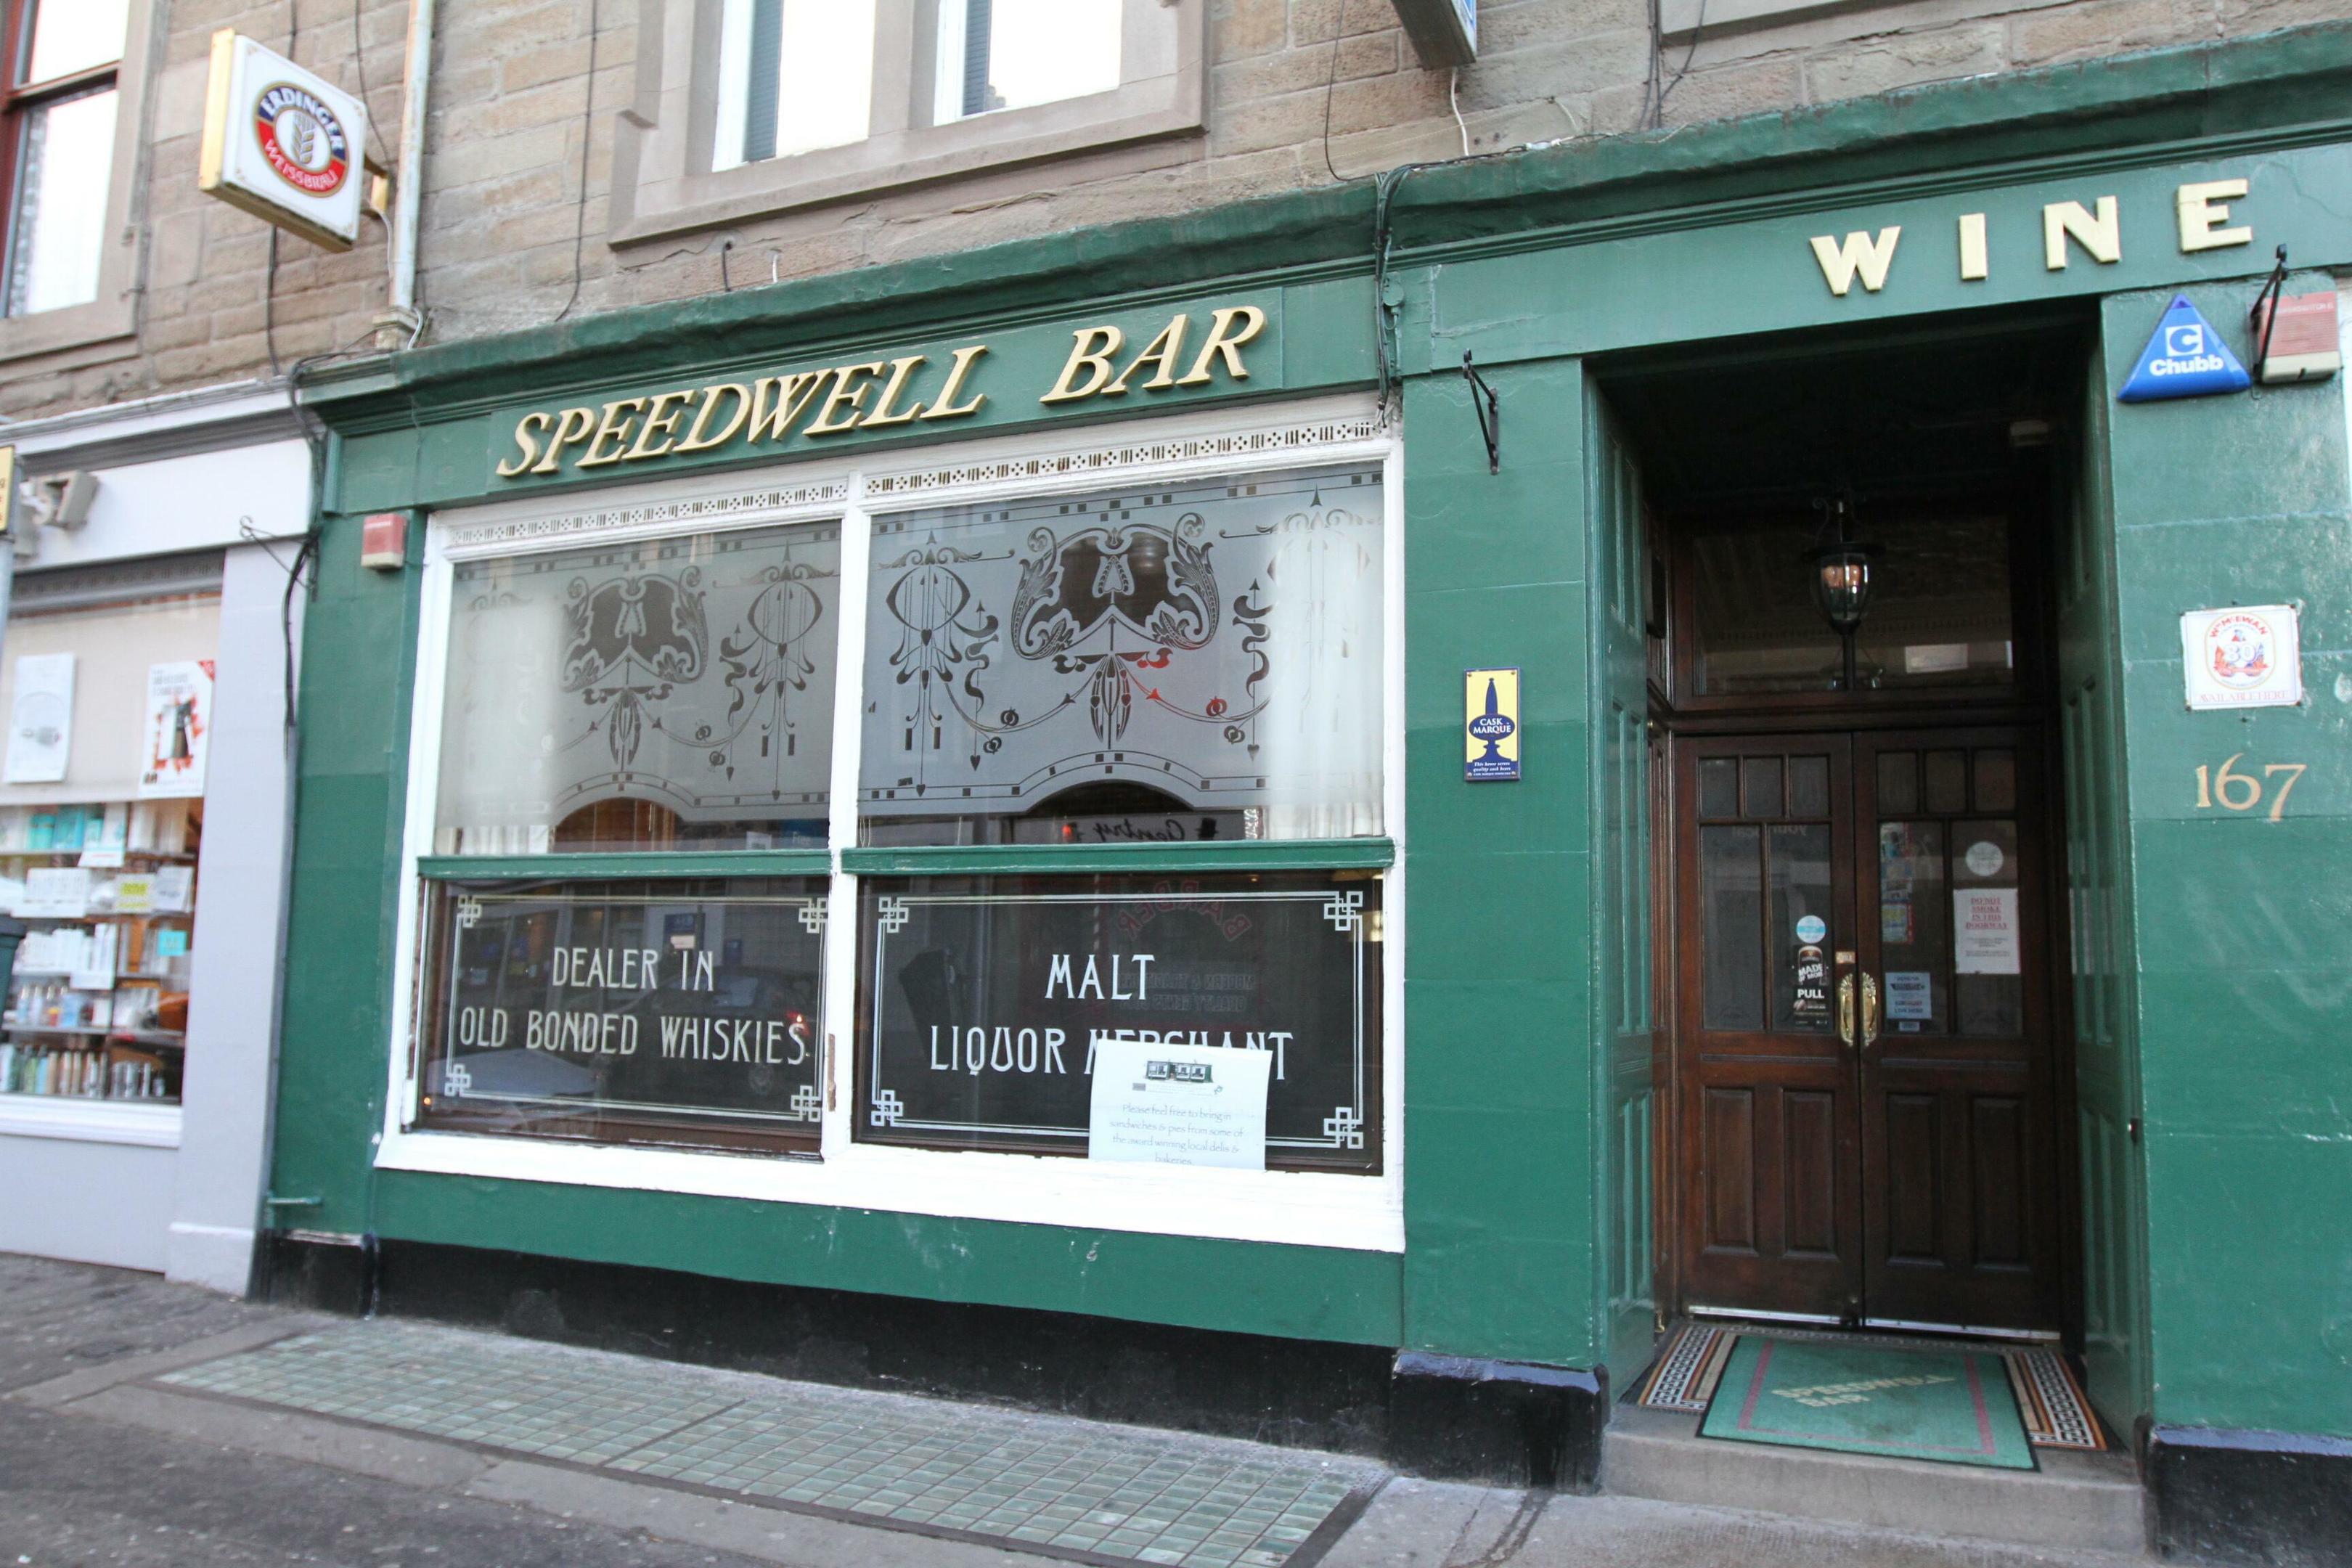 The Speedwell Bar.